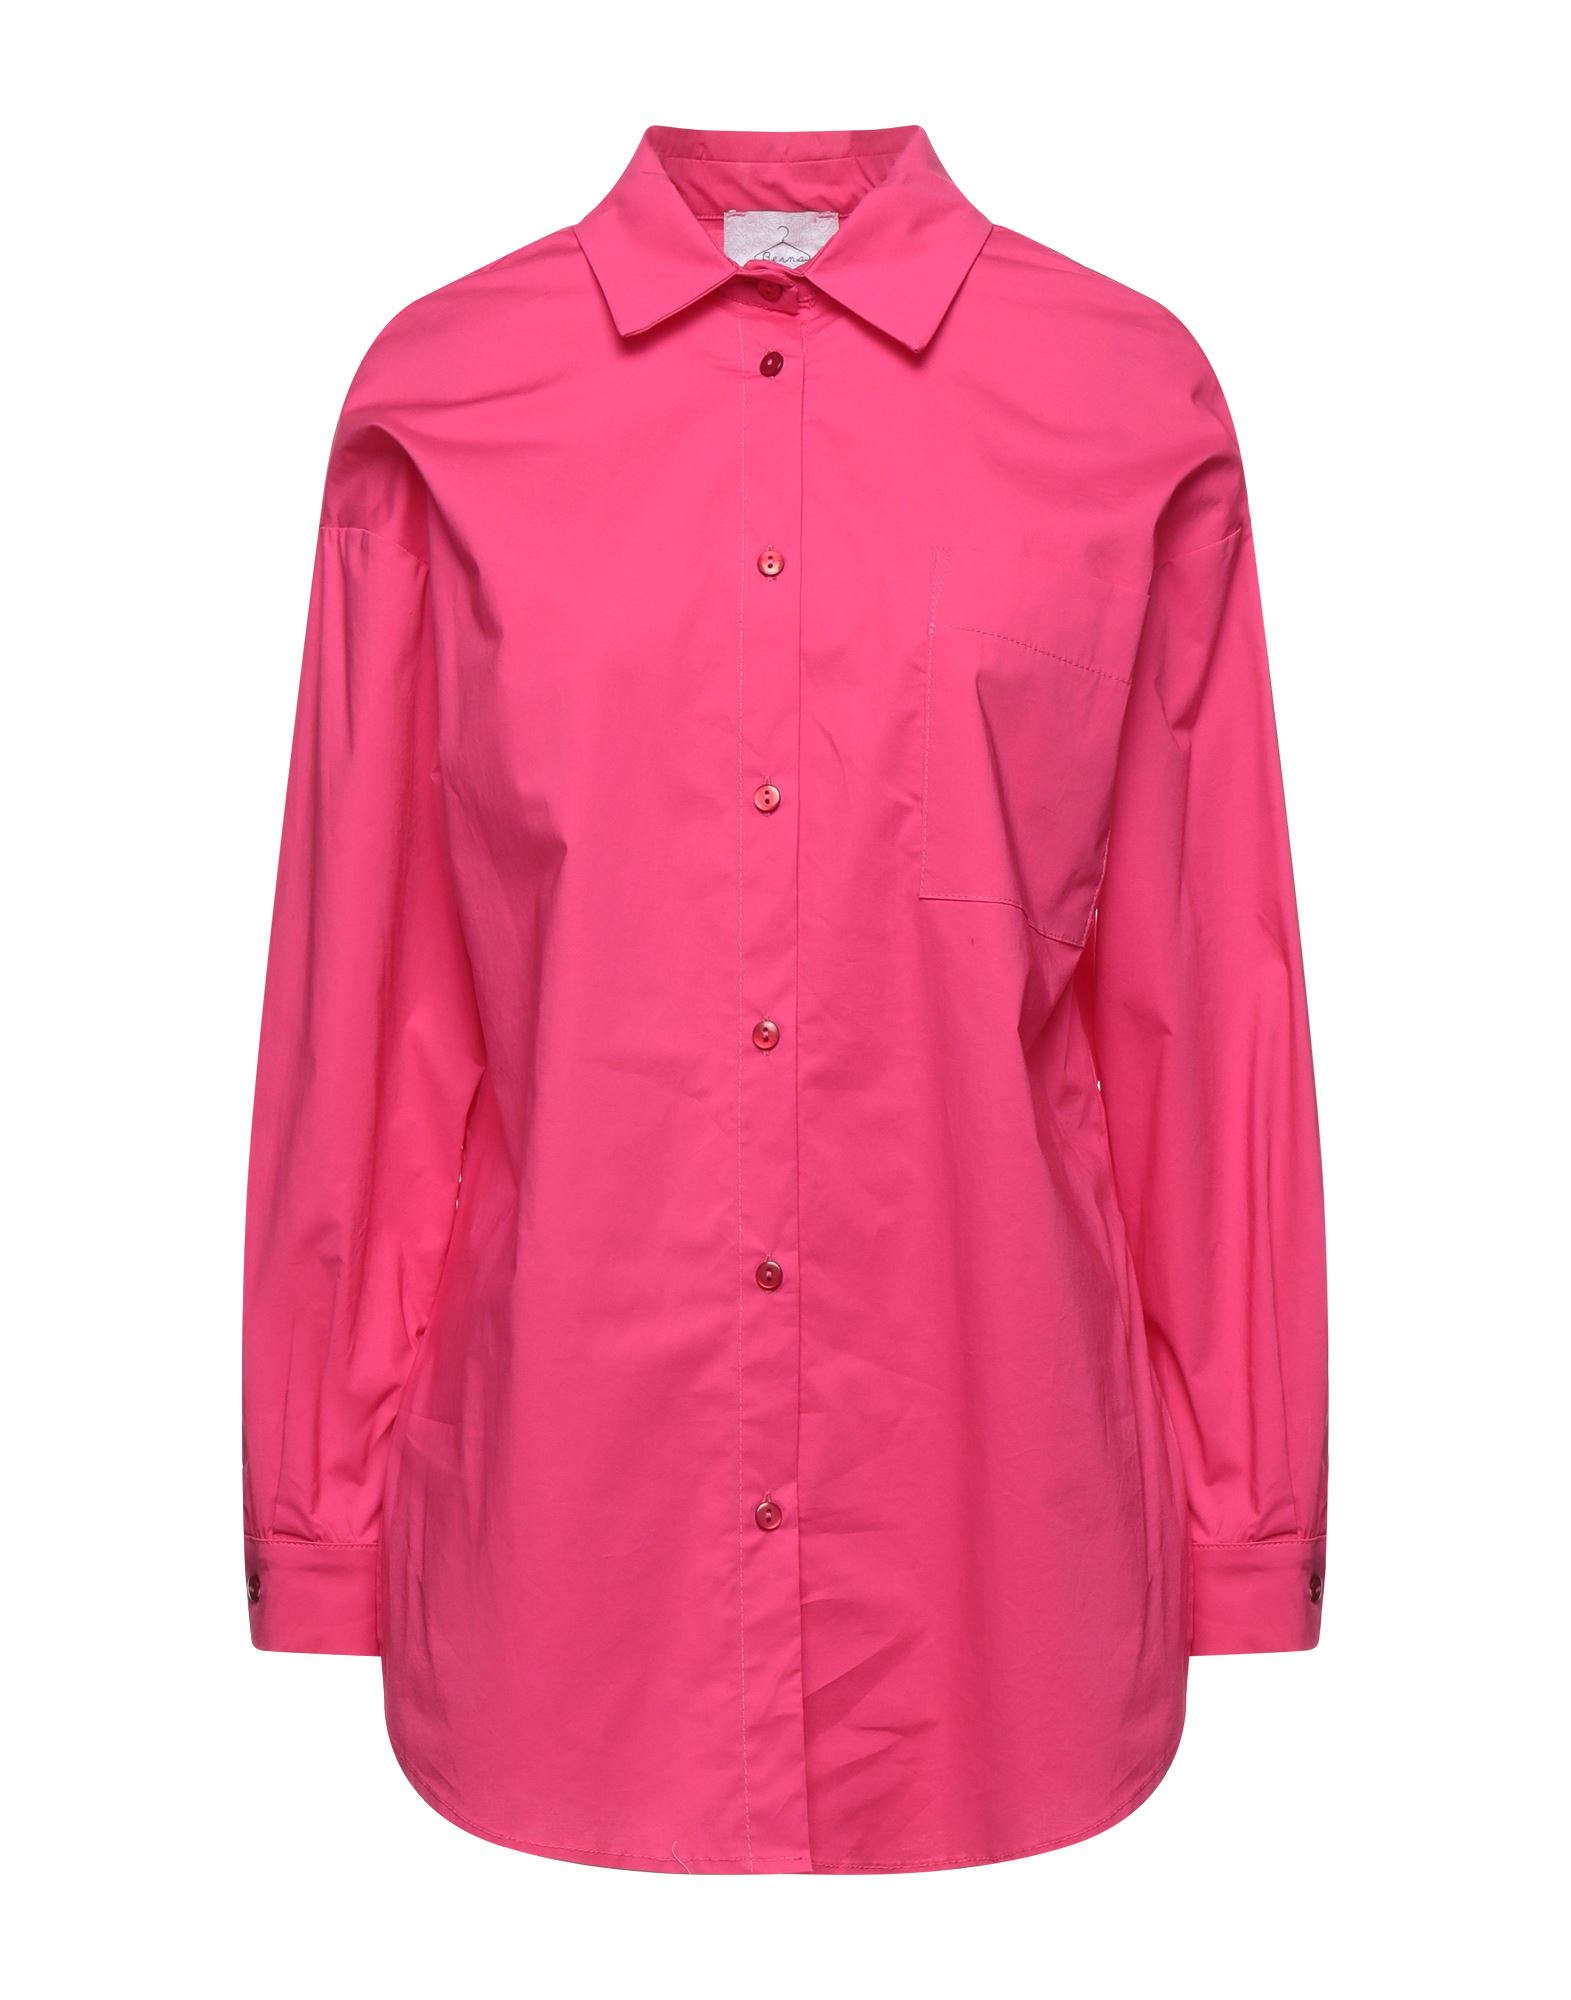 Berna Woman Shirt Fuchsia Size Xs Cotton, Elastane In Pink